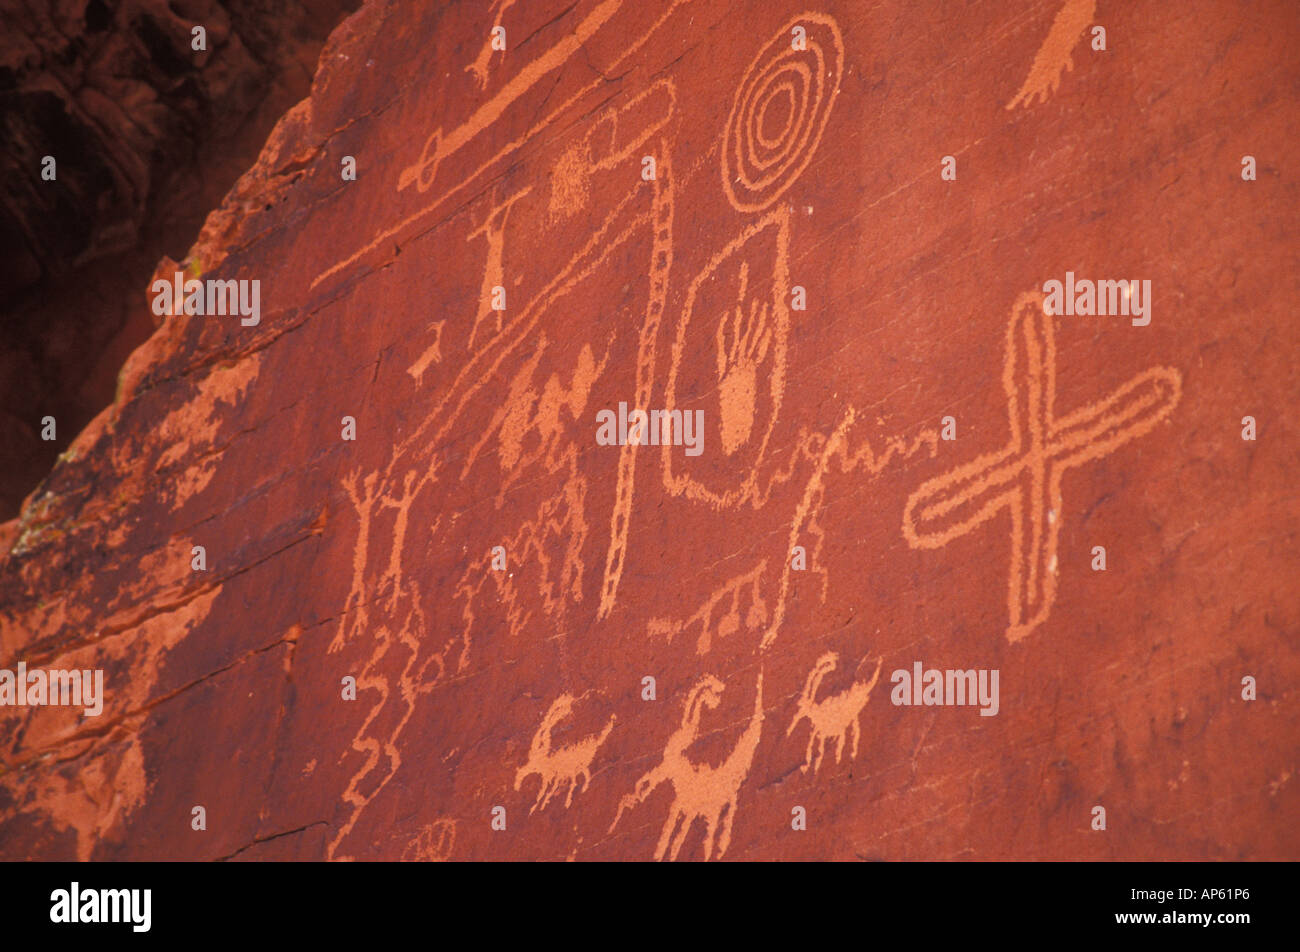 Pétroglyphes sur Atlatl Rock. Estimé à environ 4 000 ans. Vallée de Feu Park, Nevada. Près de Las Vegas Banque D'Images